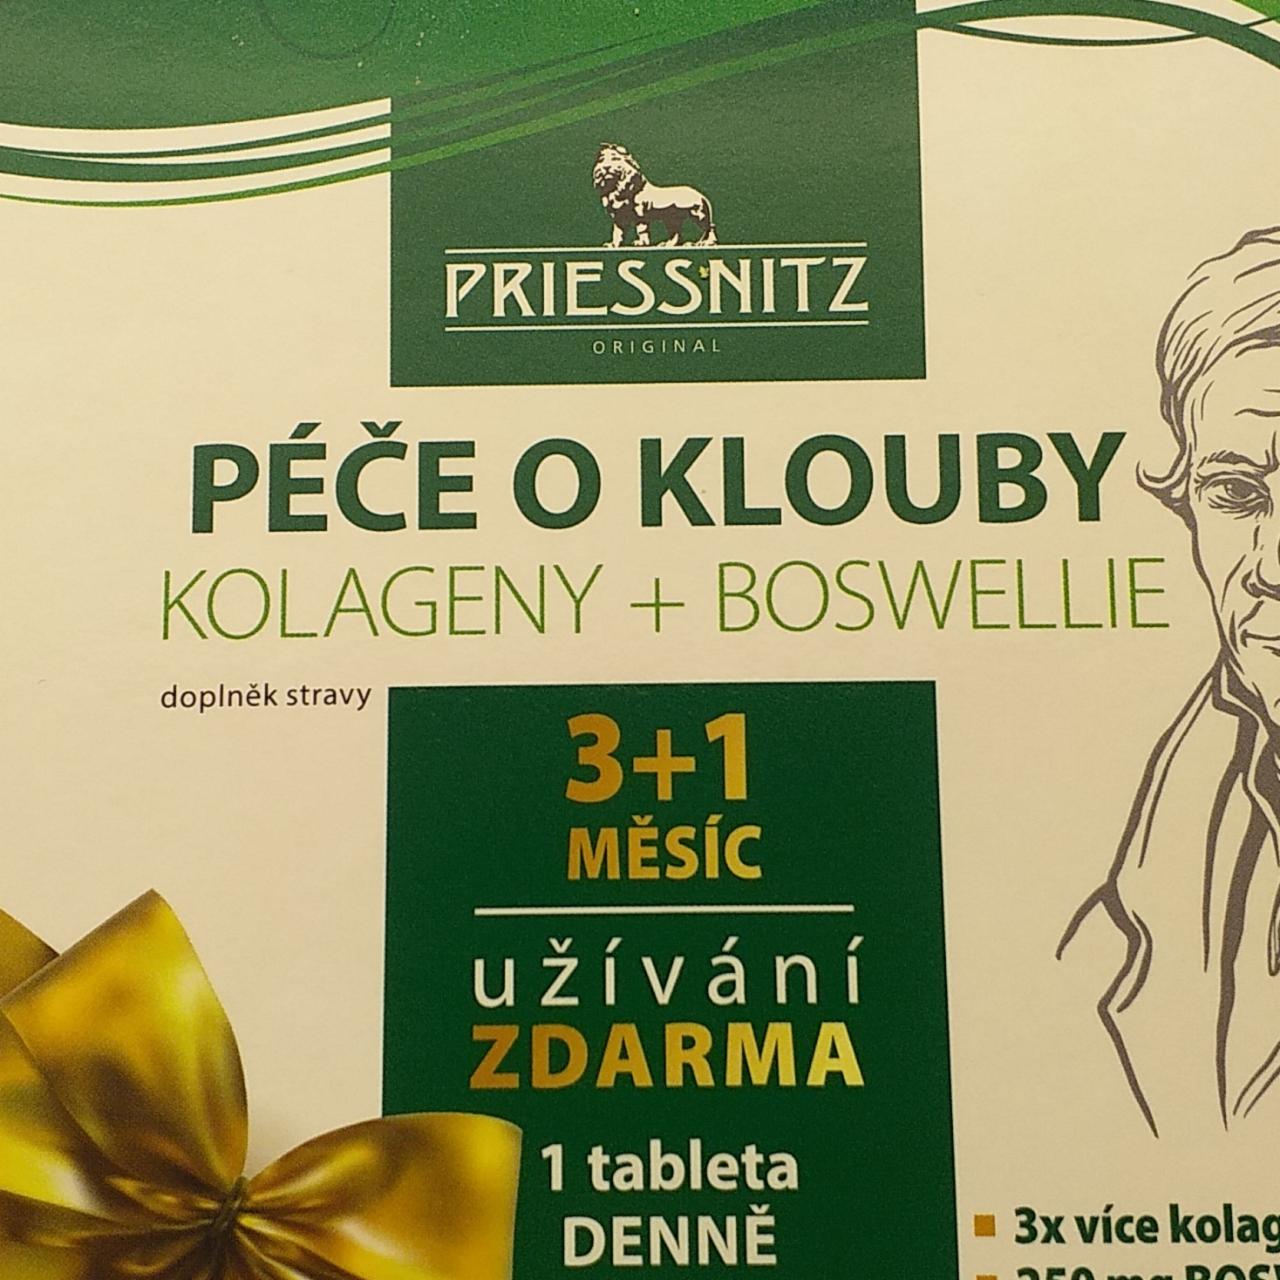 Fotografie - Kolageny + Boswellie péče o klouby Priessnitz